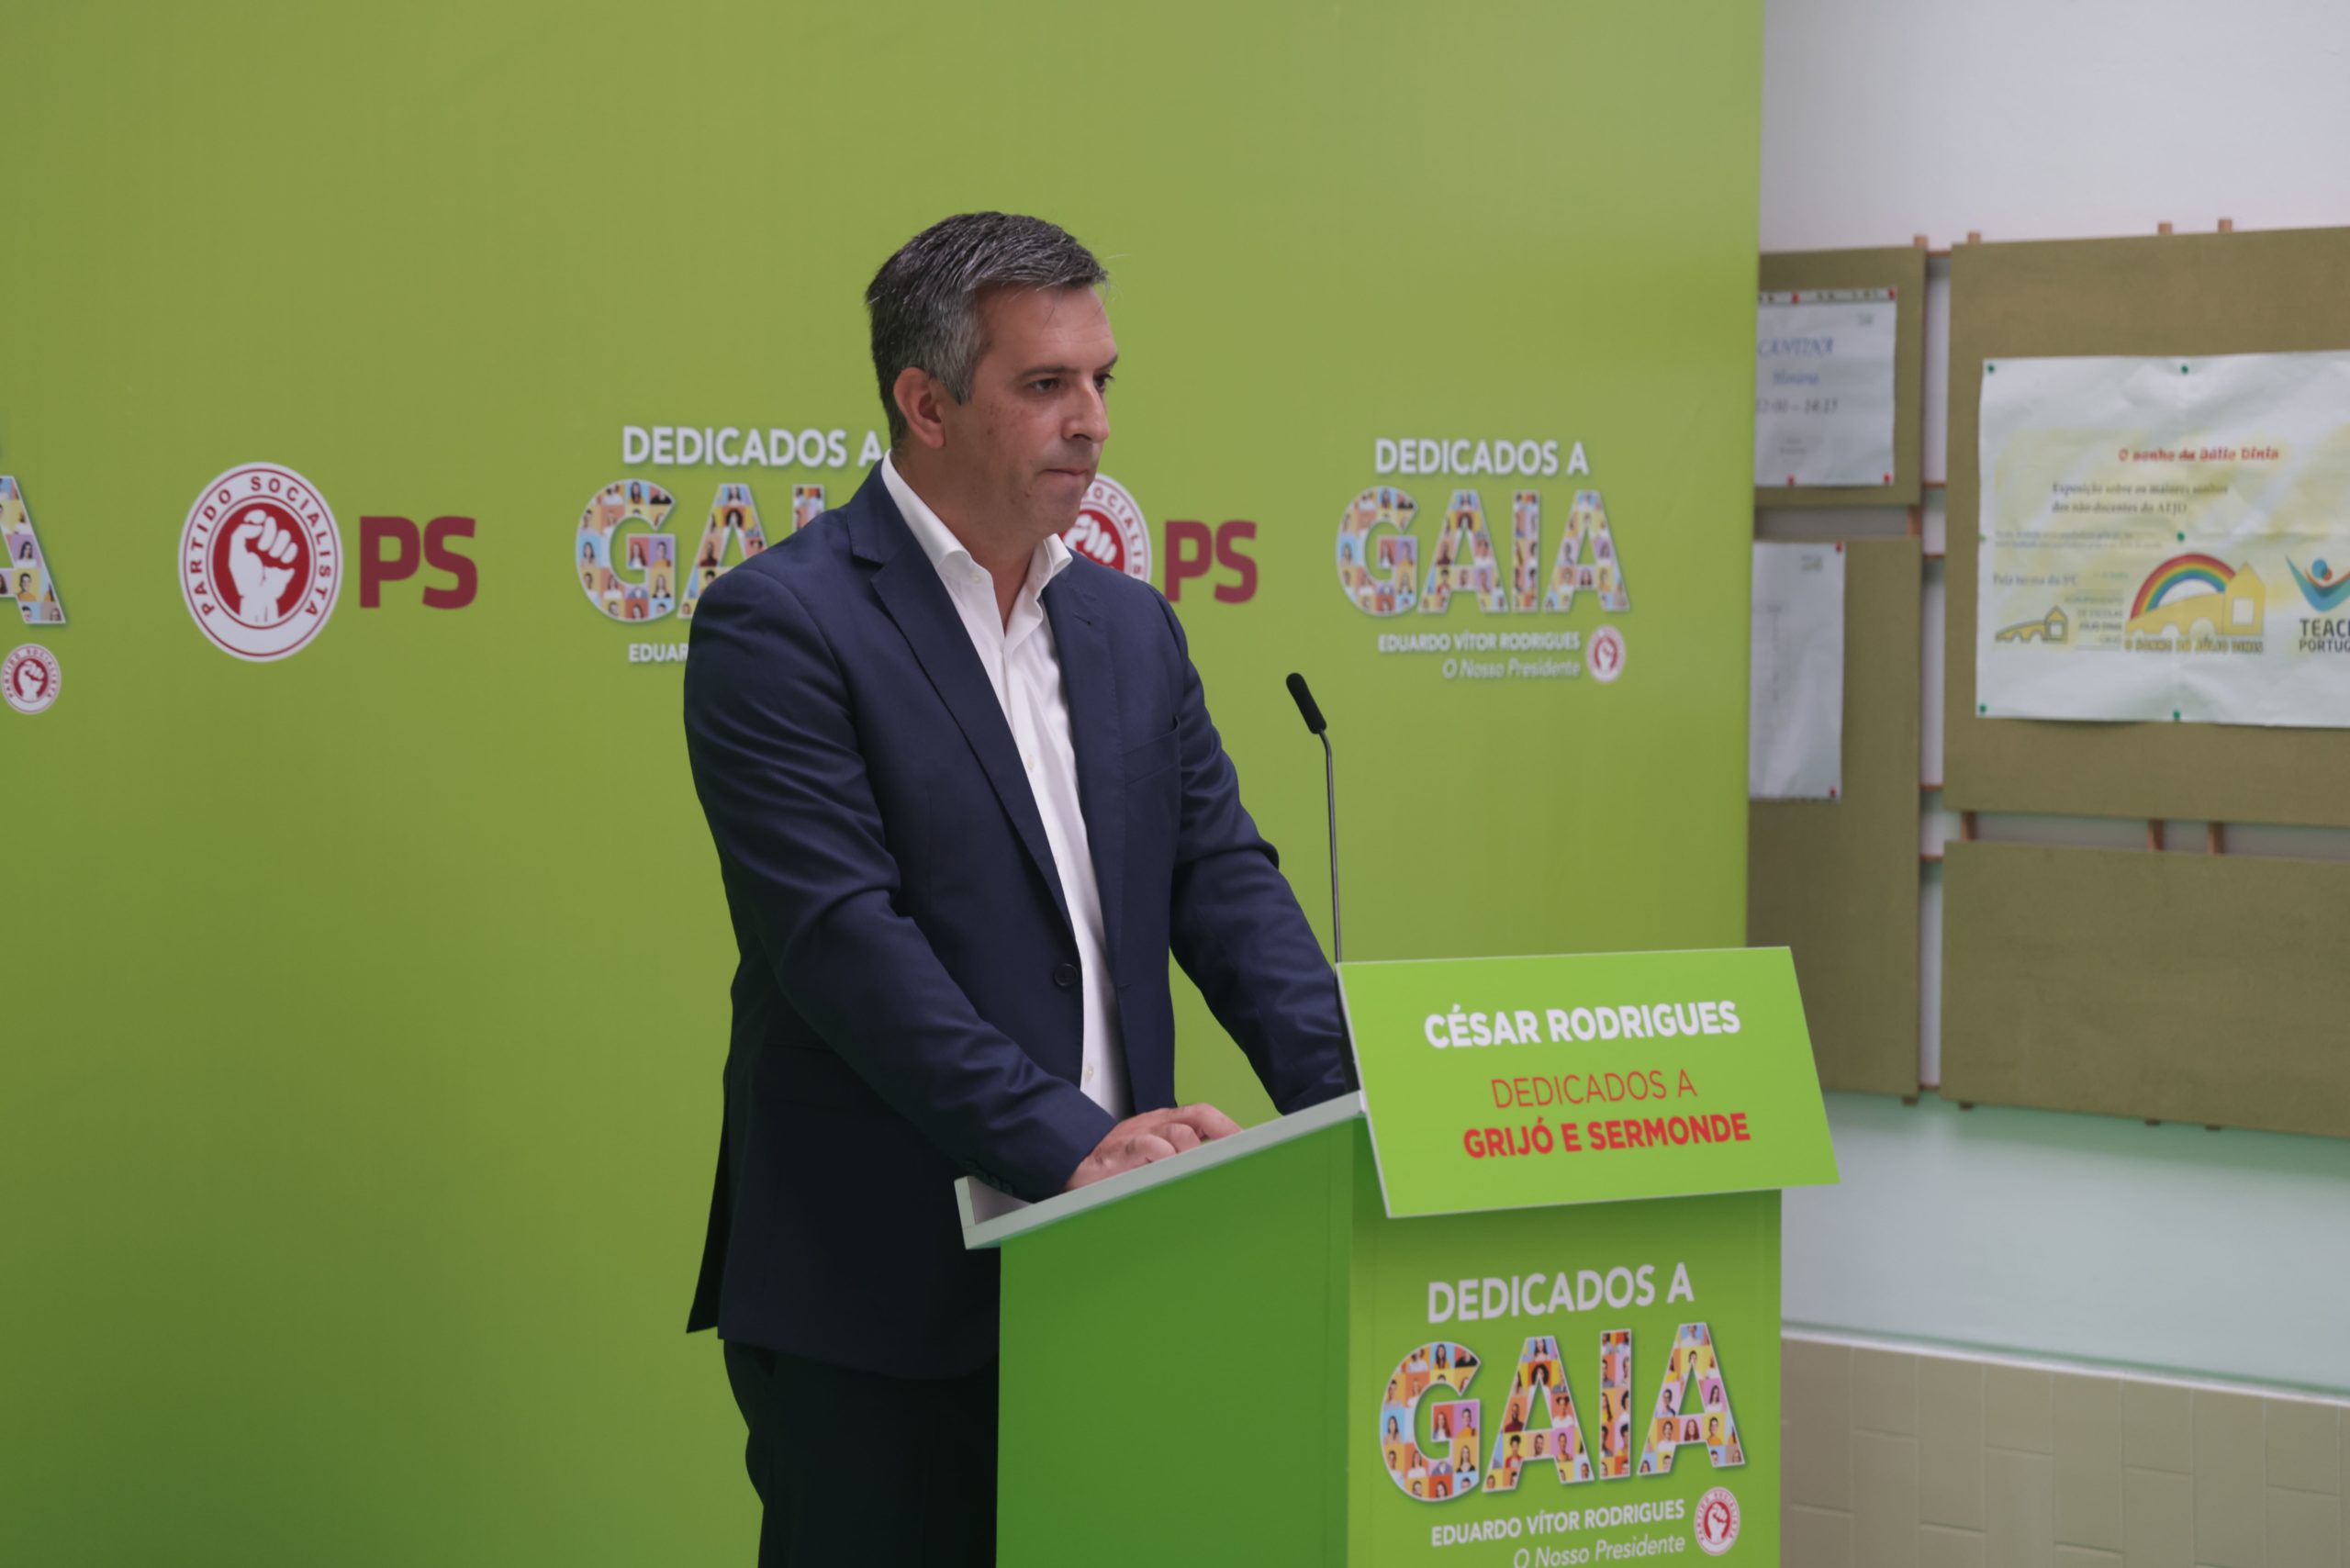 Apresentação da Candidatura de César Rodrigues à União de Freguesias de Grijó e Sermonde